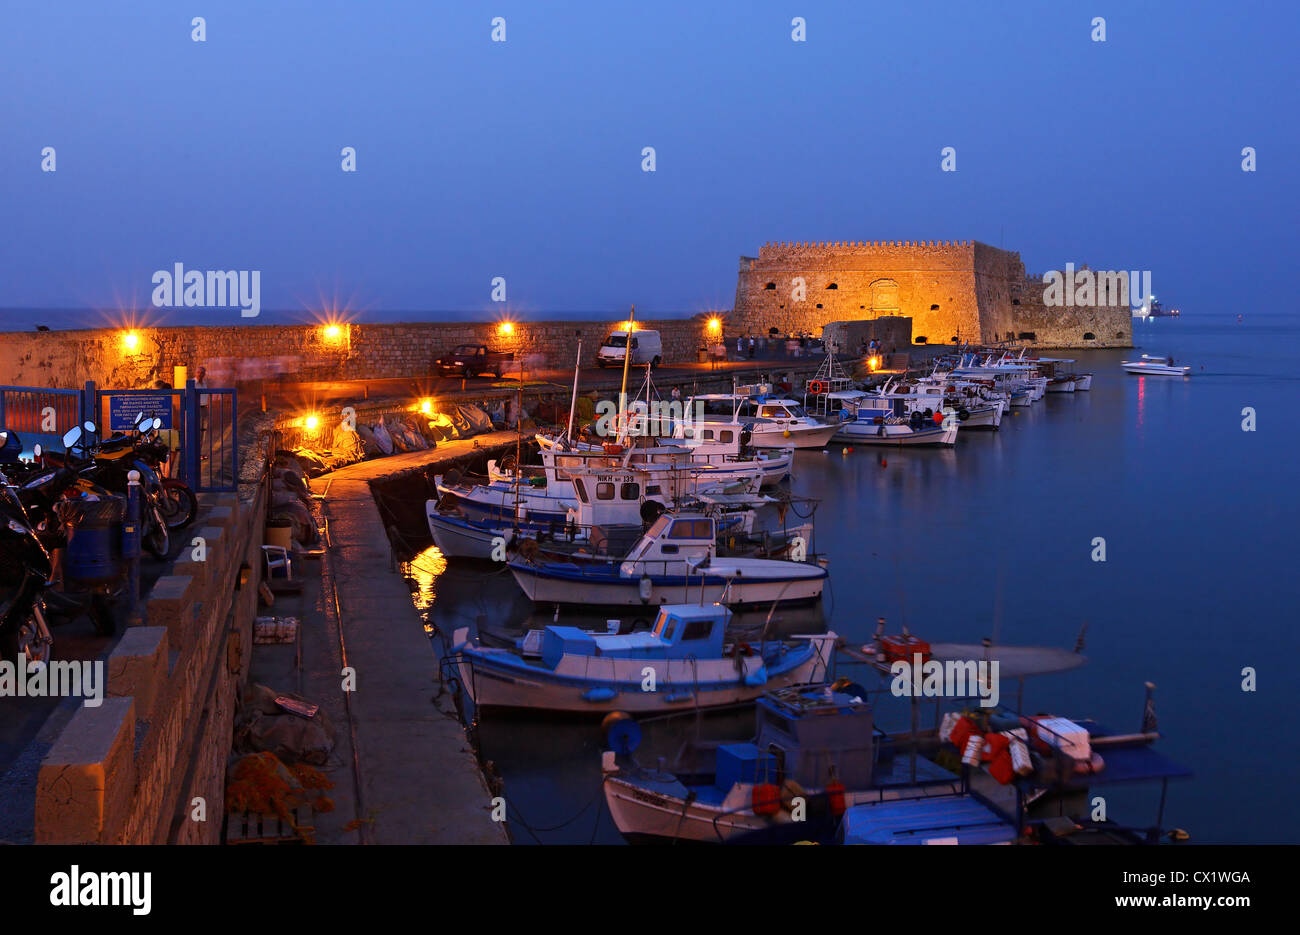 Nachtansicht des alten venezianischen Hafen von Heraklion, Kreta, Griechenland. Im Hintergrund sehen Sie das Schloss Kule. Kreta, Griechenland. Stockfoto